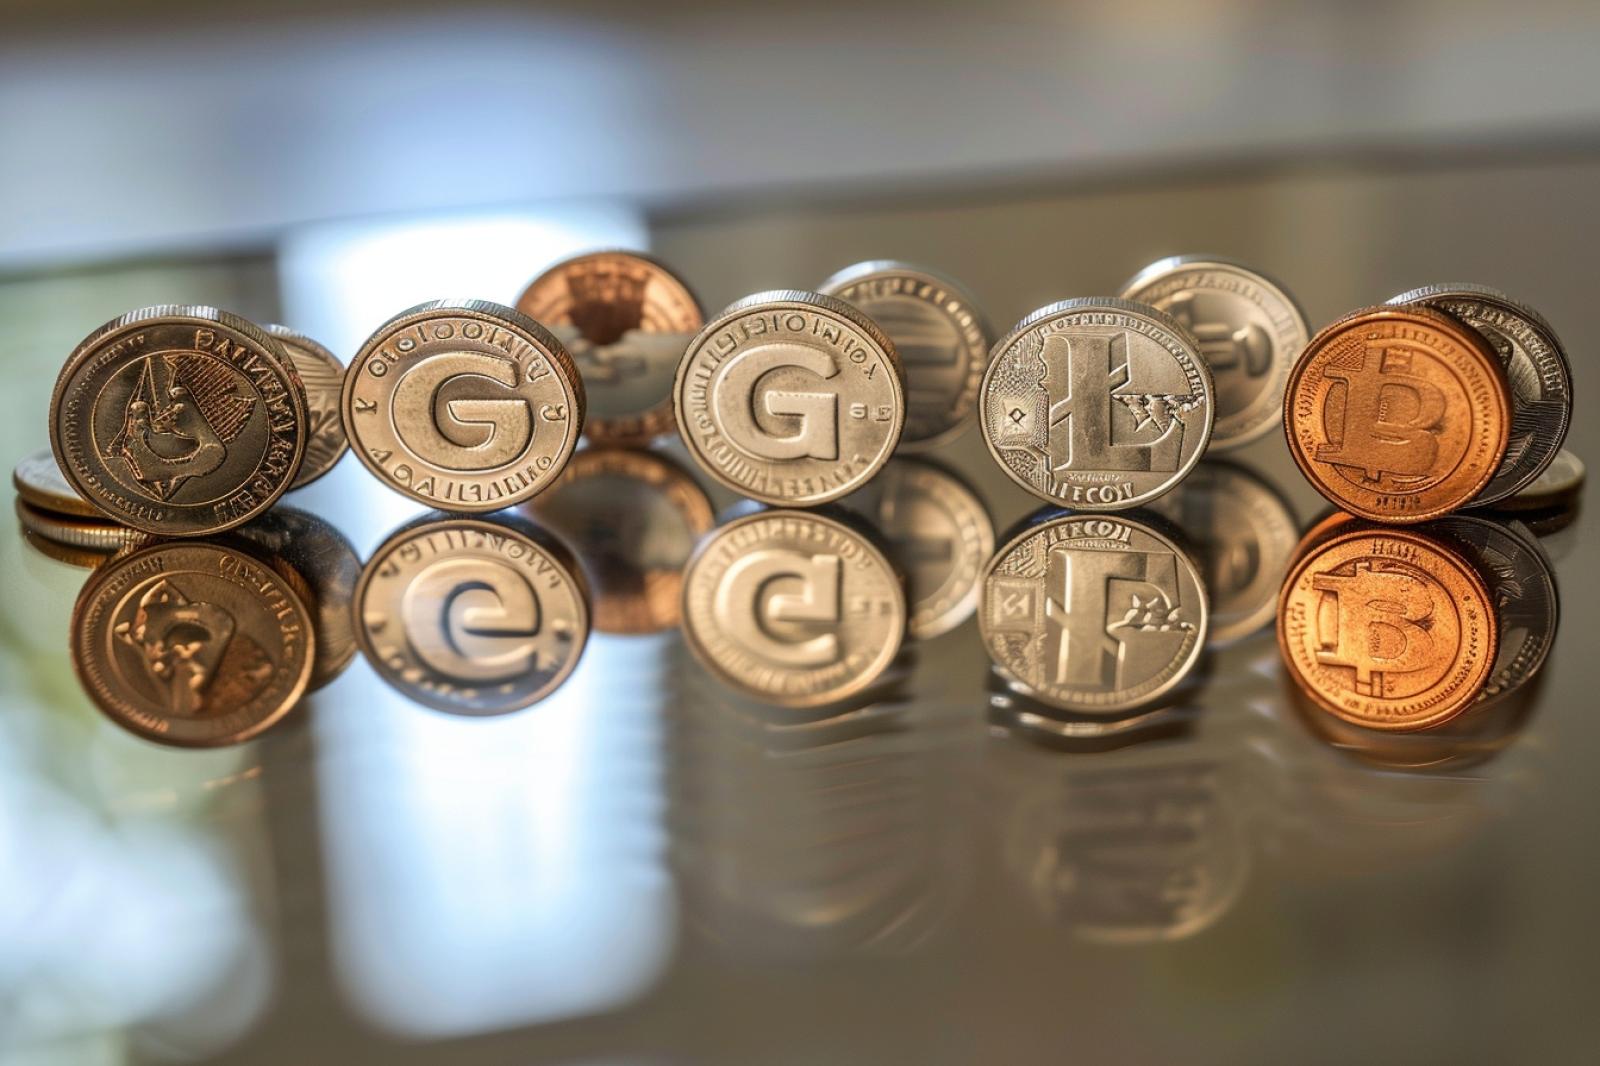 Monnaie en G : Les monnaies commencent par G